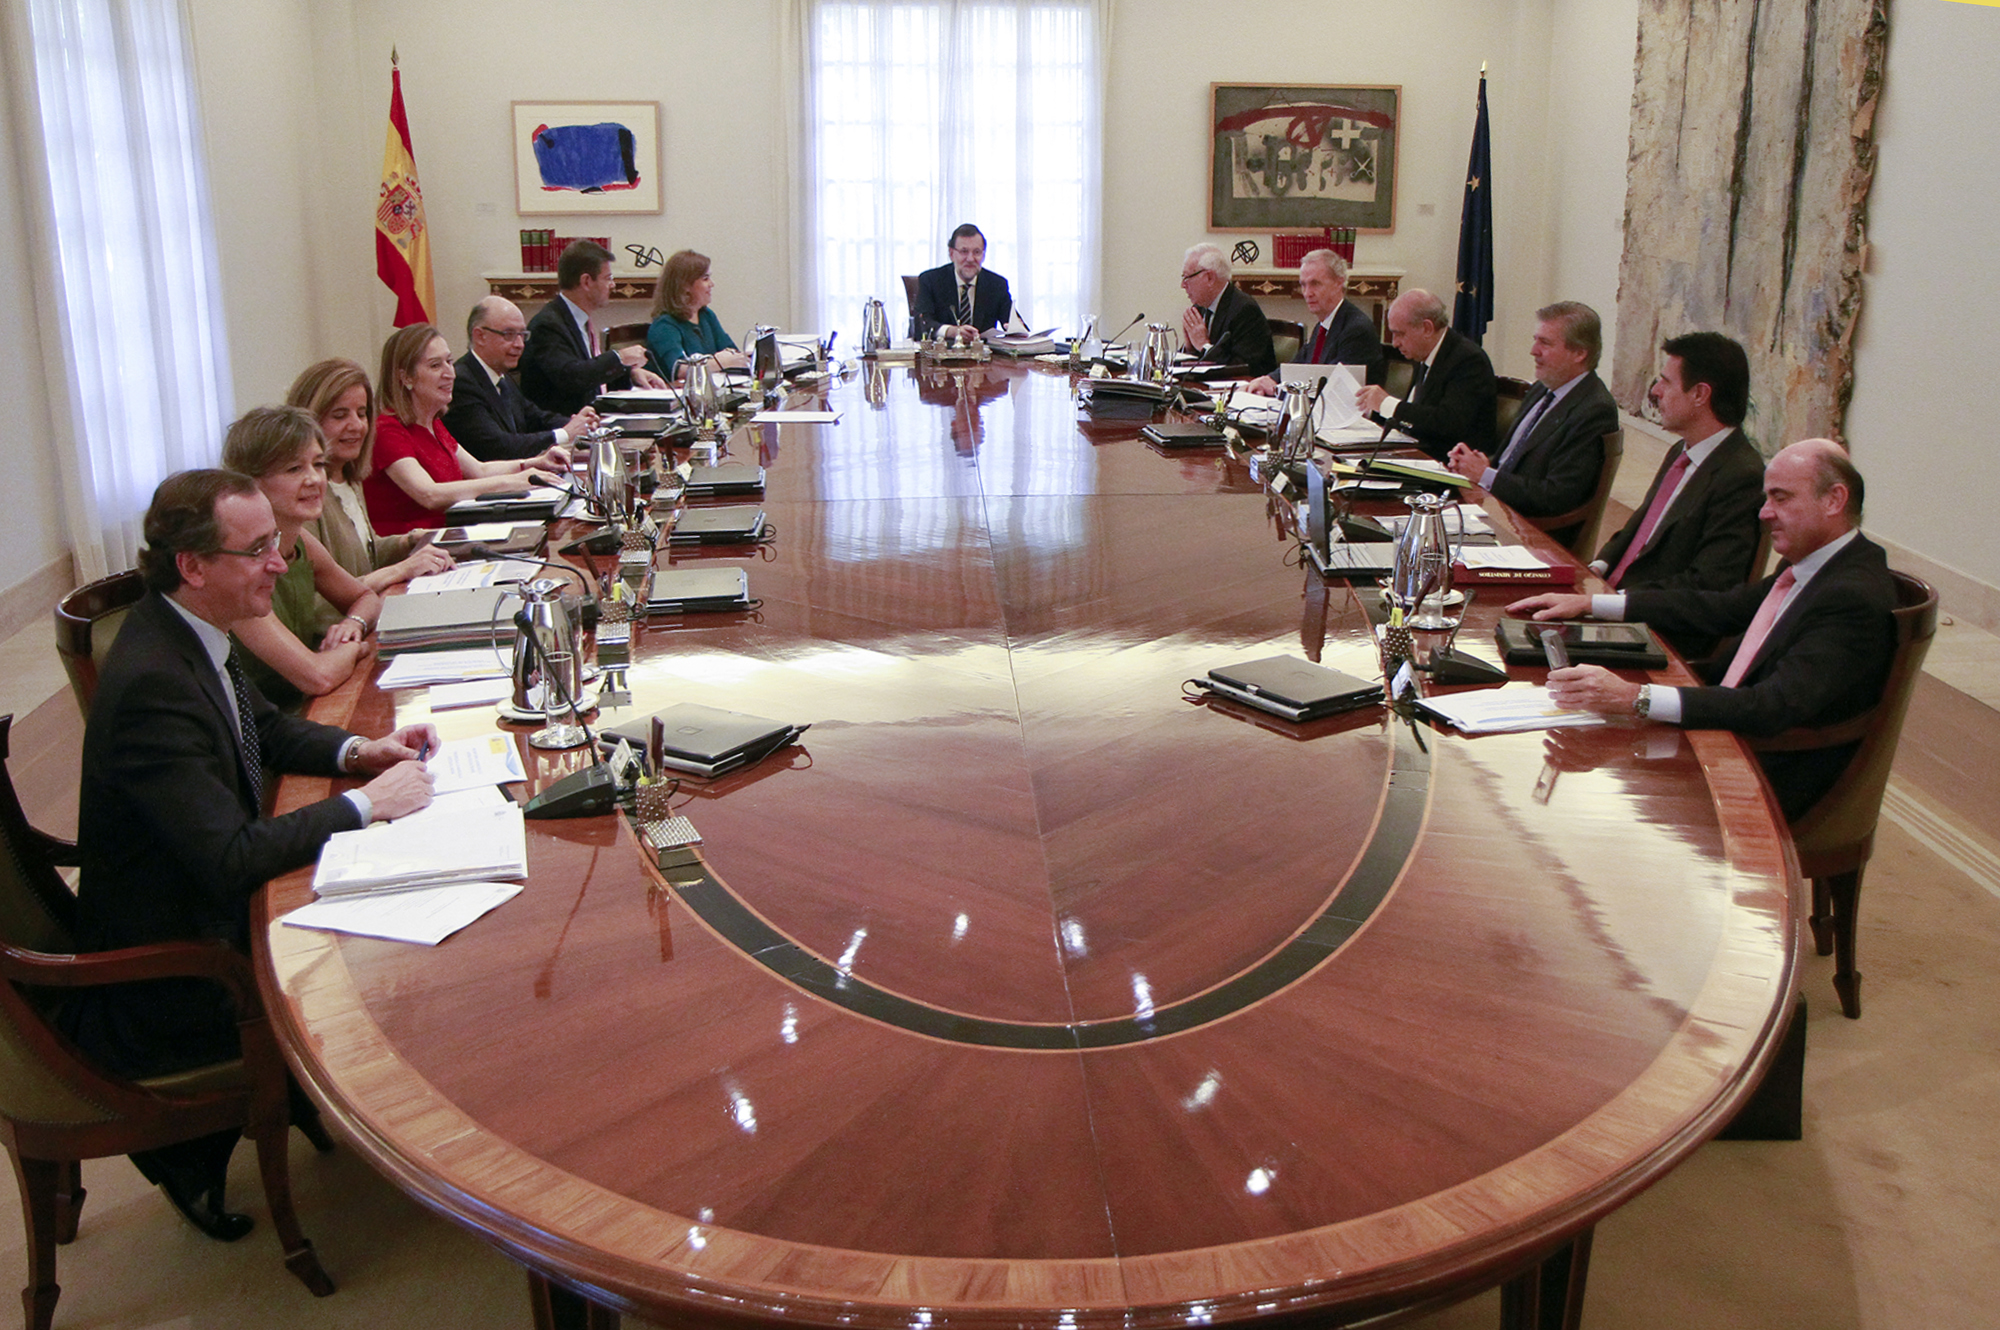 Una de las últimas fotos del Consejo de Ministros, aún con Soria presente